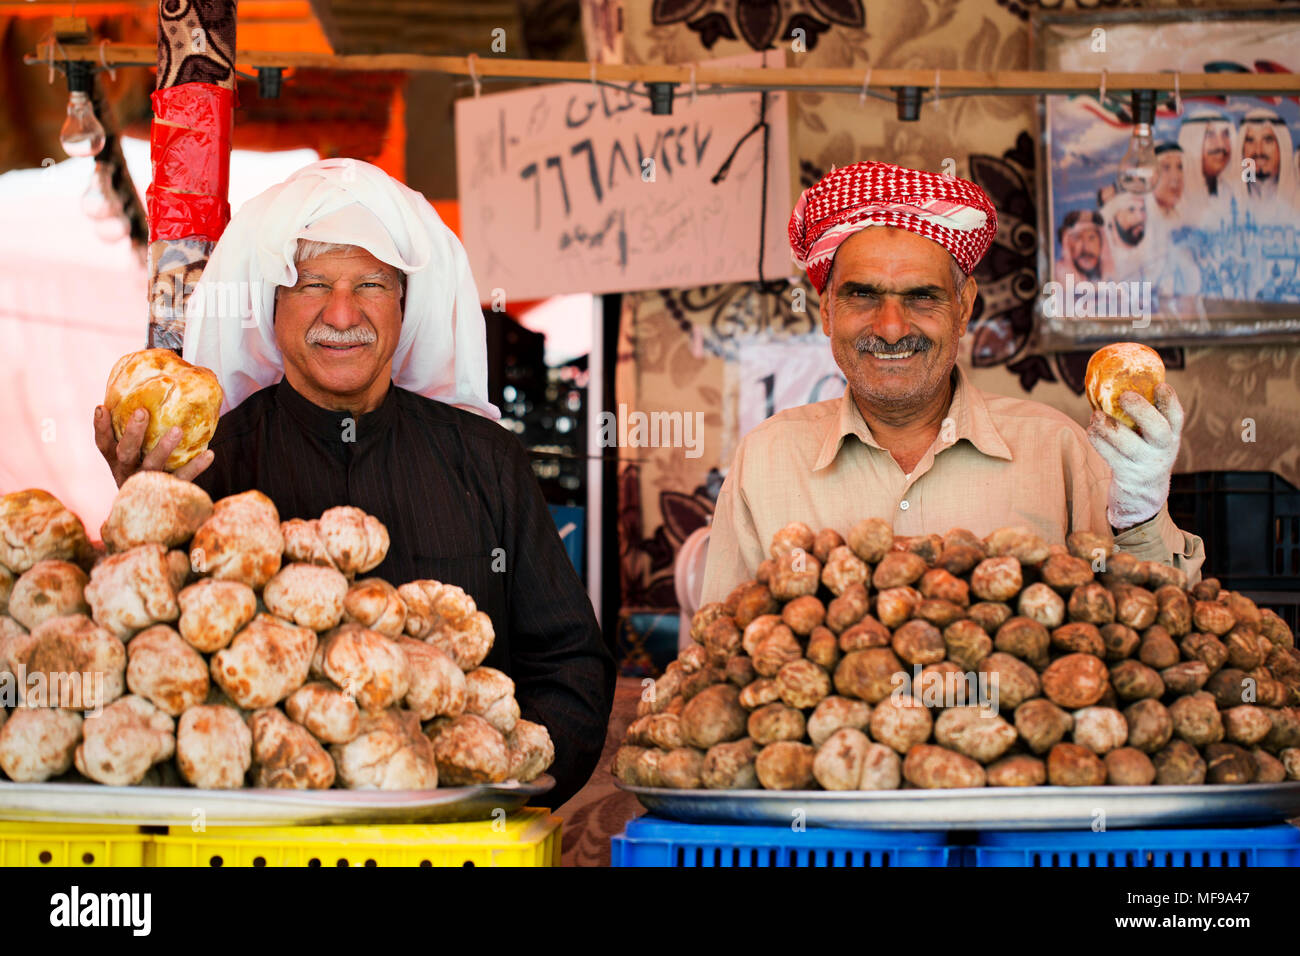 Fagga (desert truffles) sellers at a traveller's market in Kuwait. Stock Photo